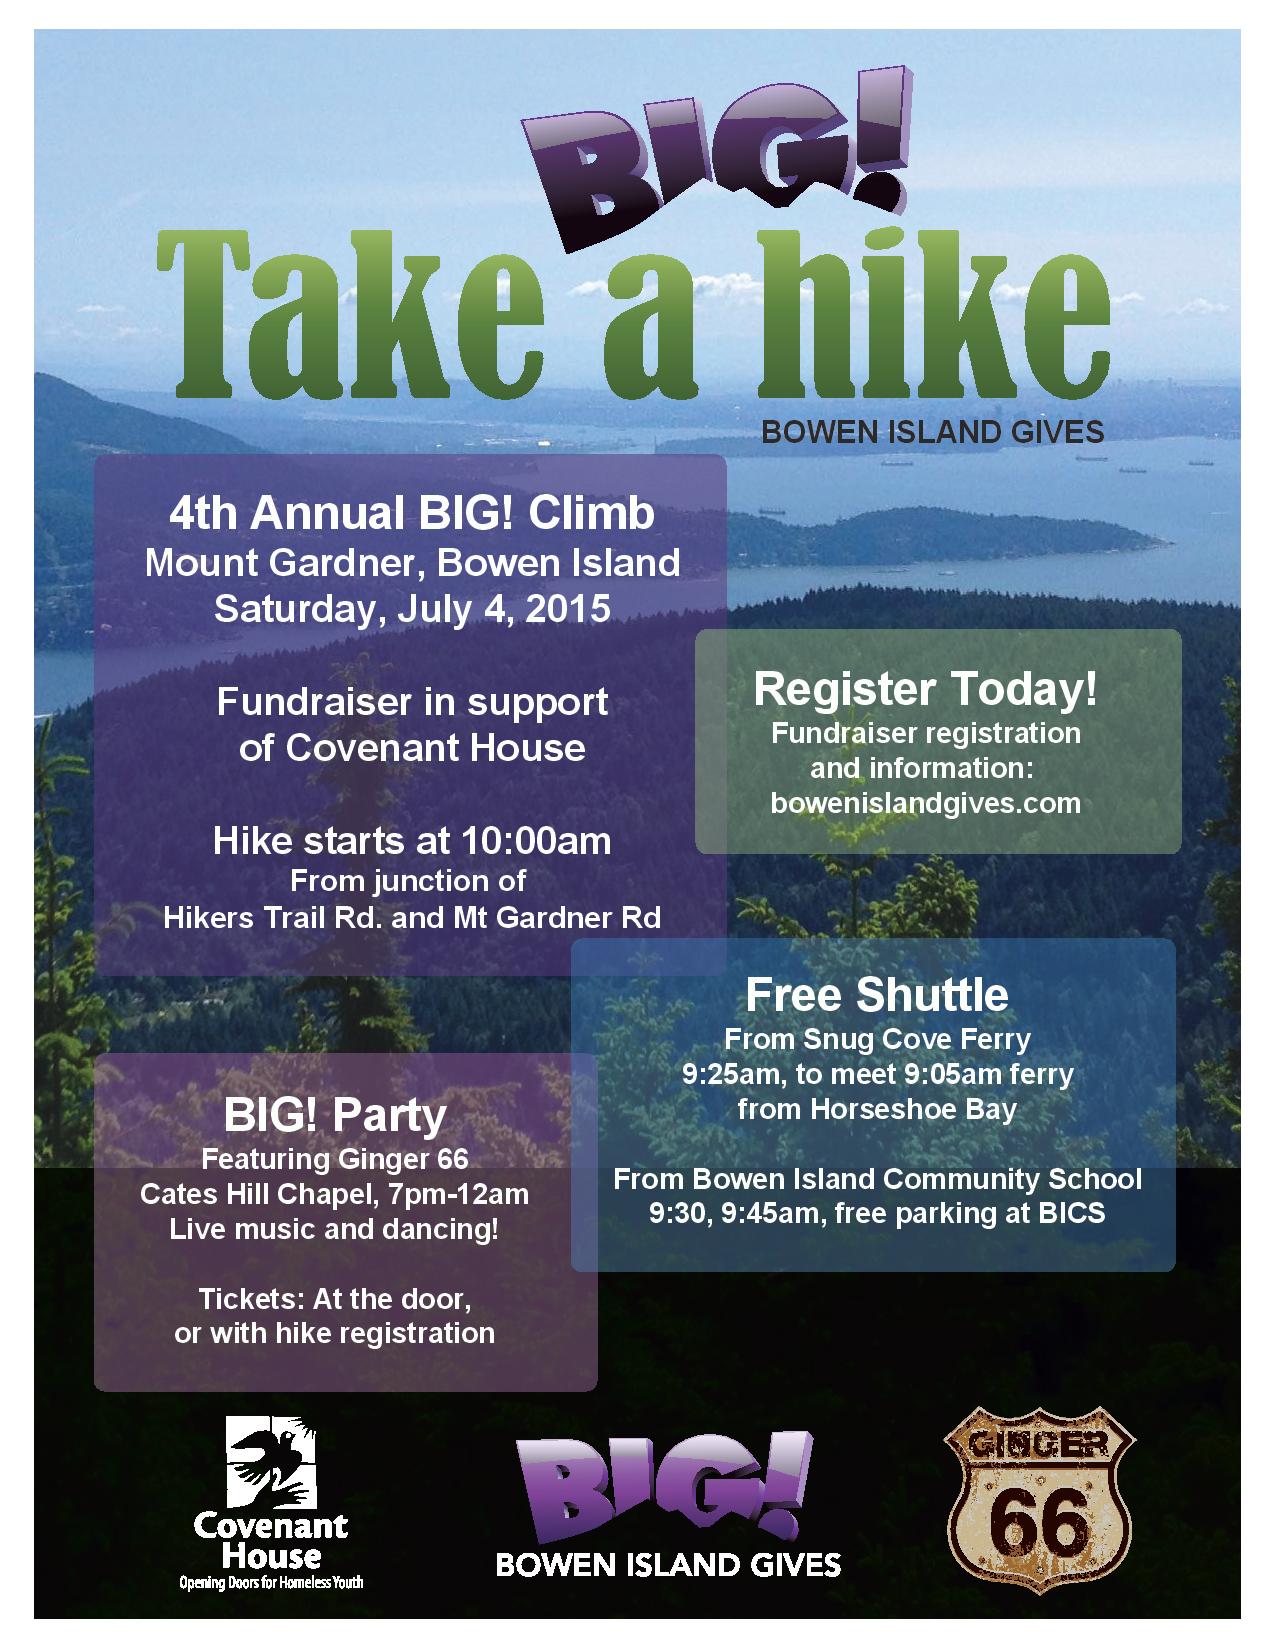 Bowen Island Gives invites you to Take a Big Hike